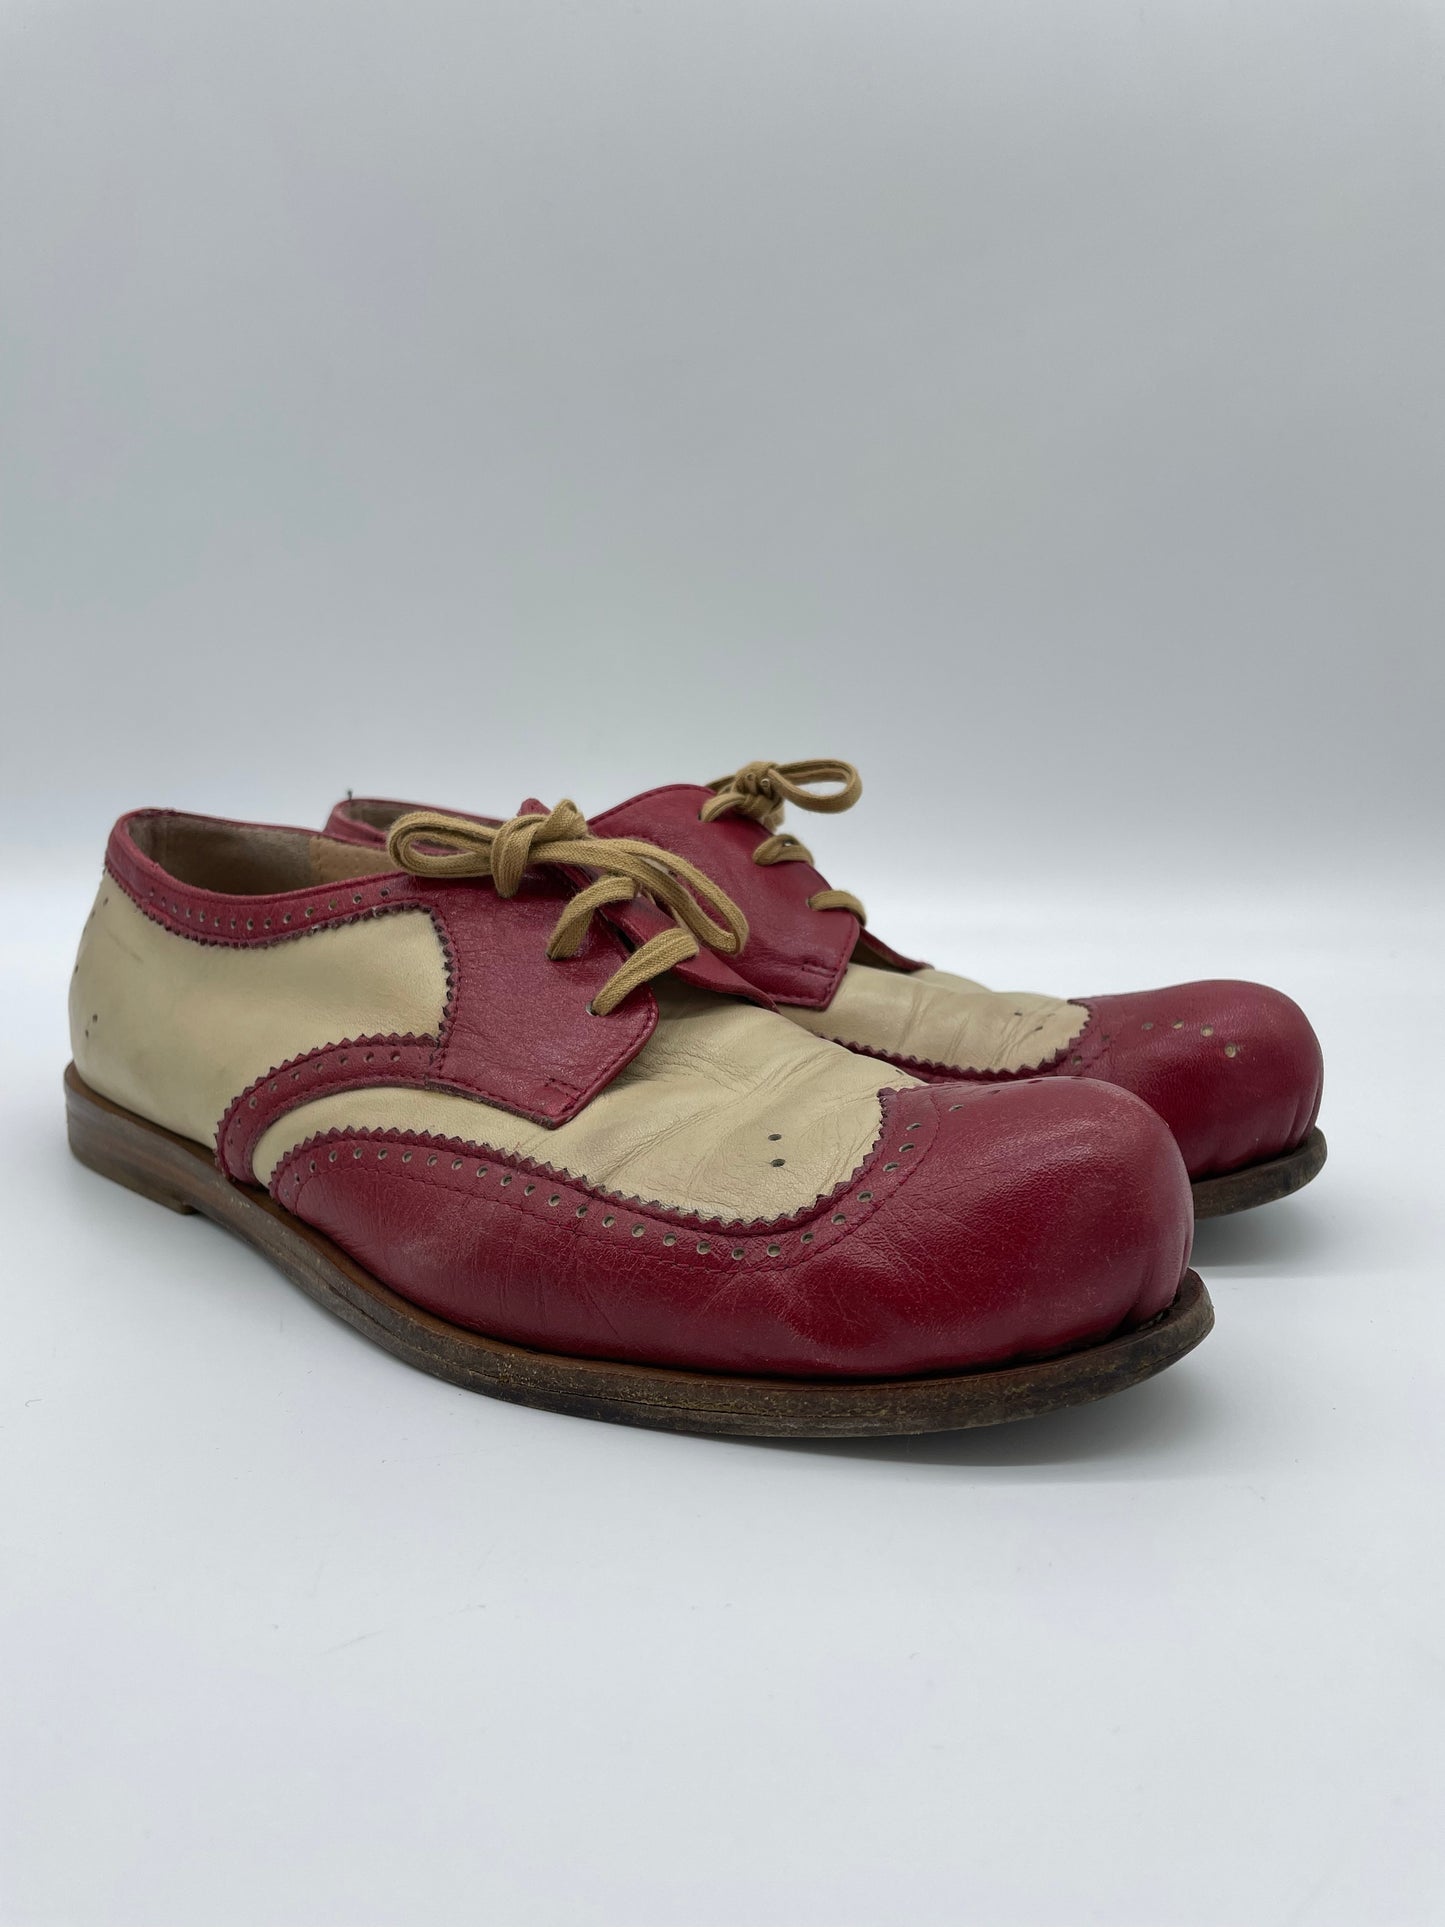 scarpa-allacciata-in-vera-pelle-colore-rosso-e-crema